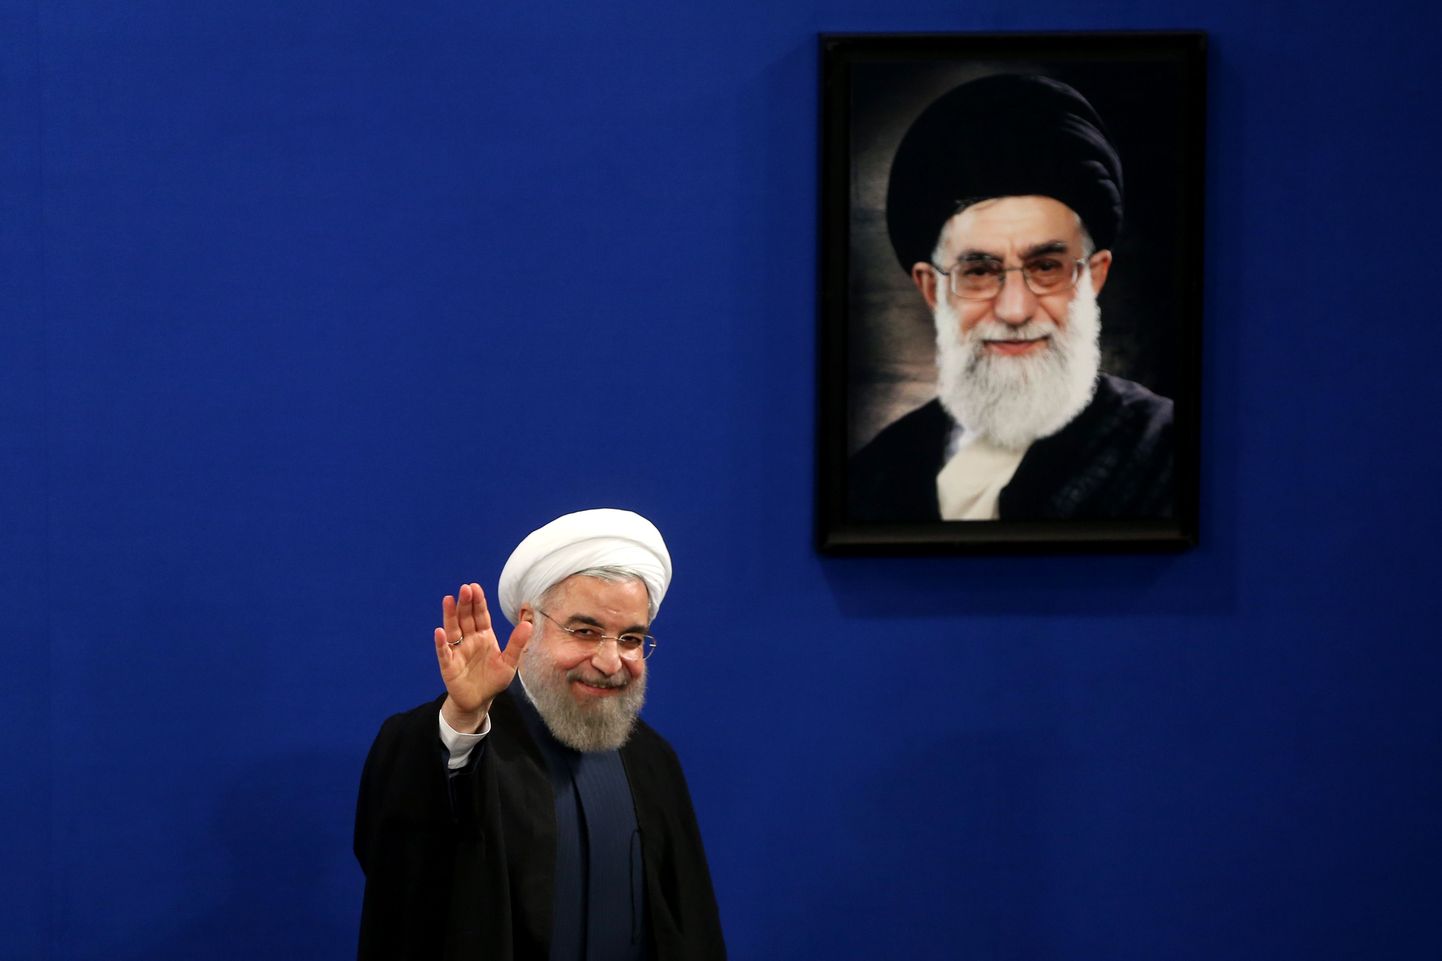 Iraani president Hassan Rouhani